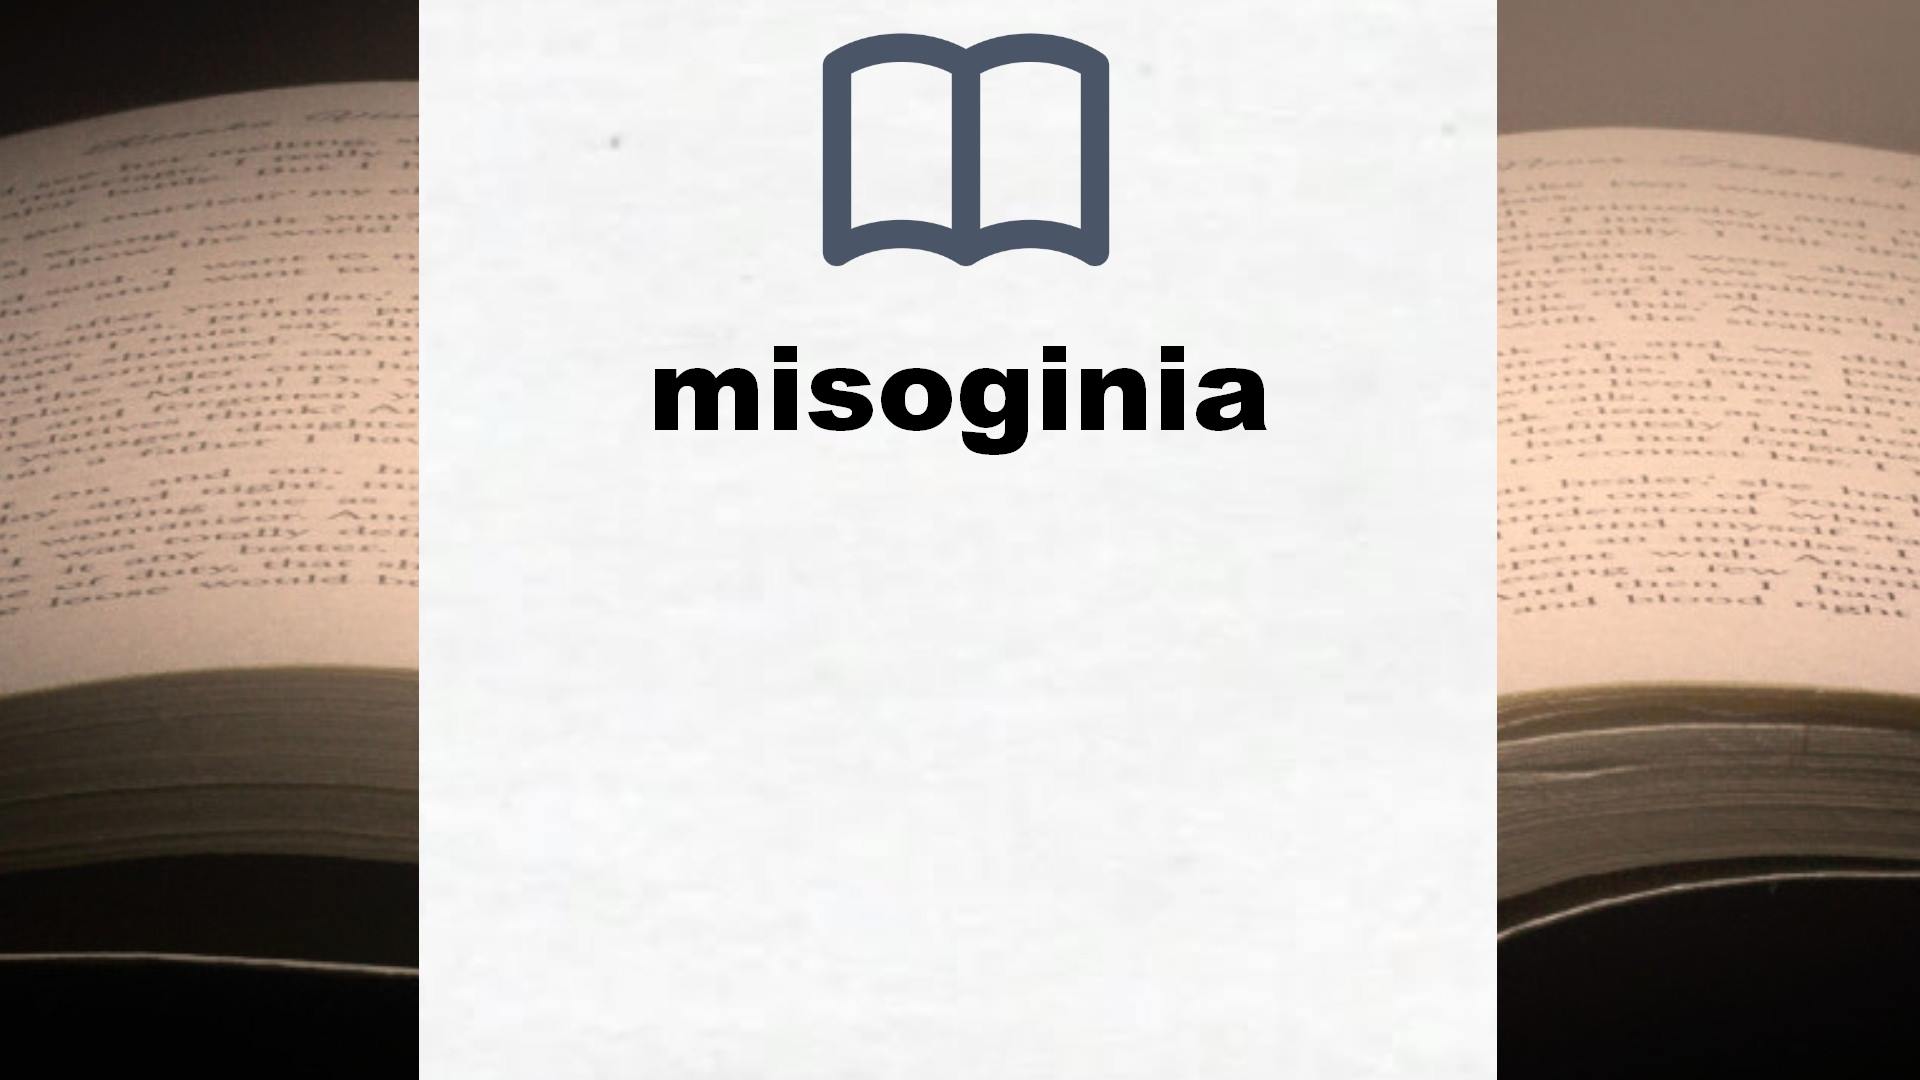 Libros sobre misoginia